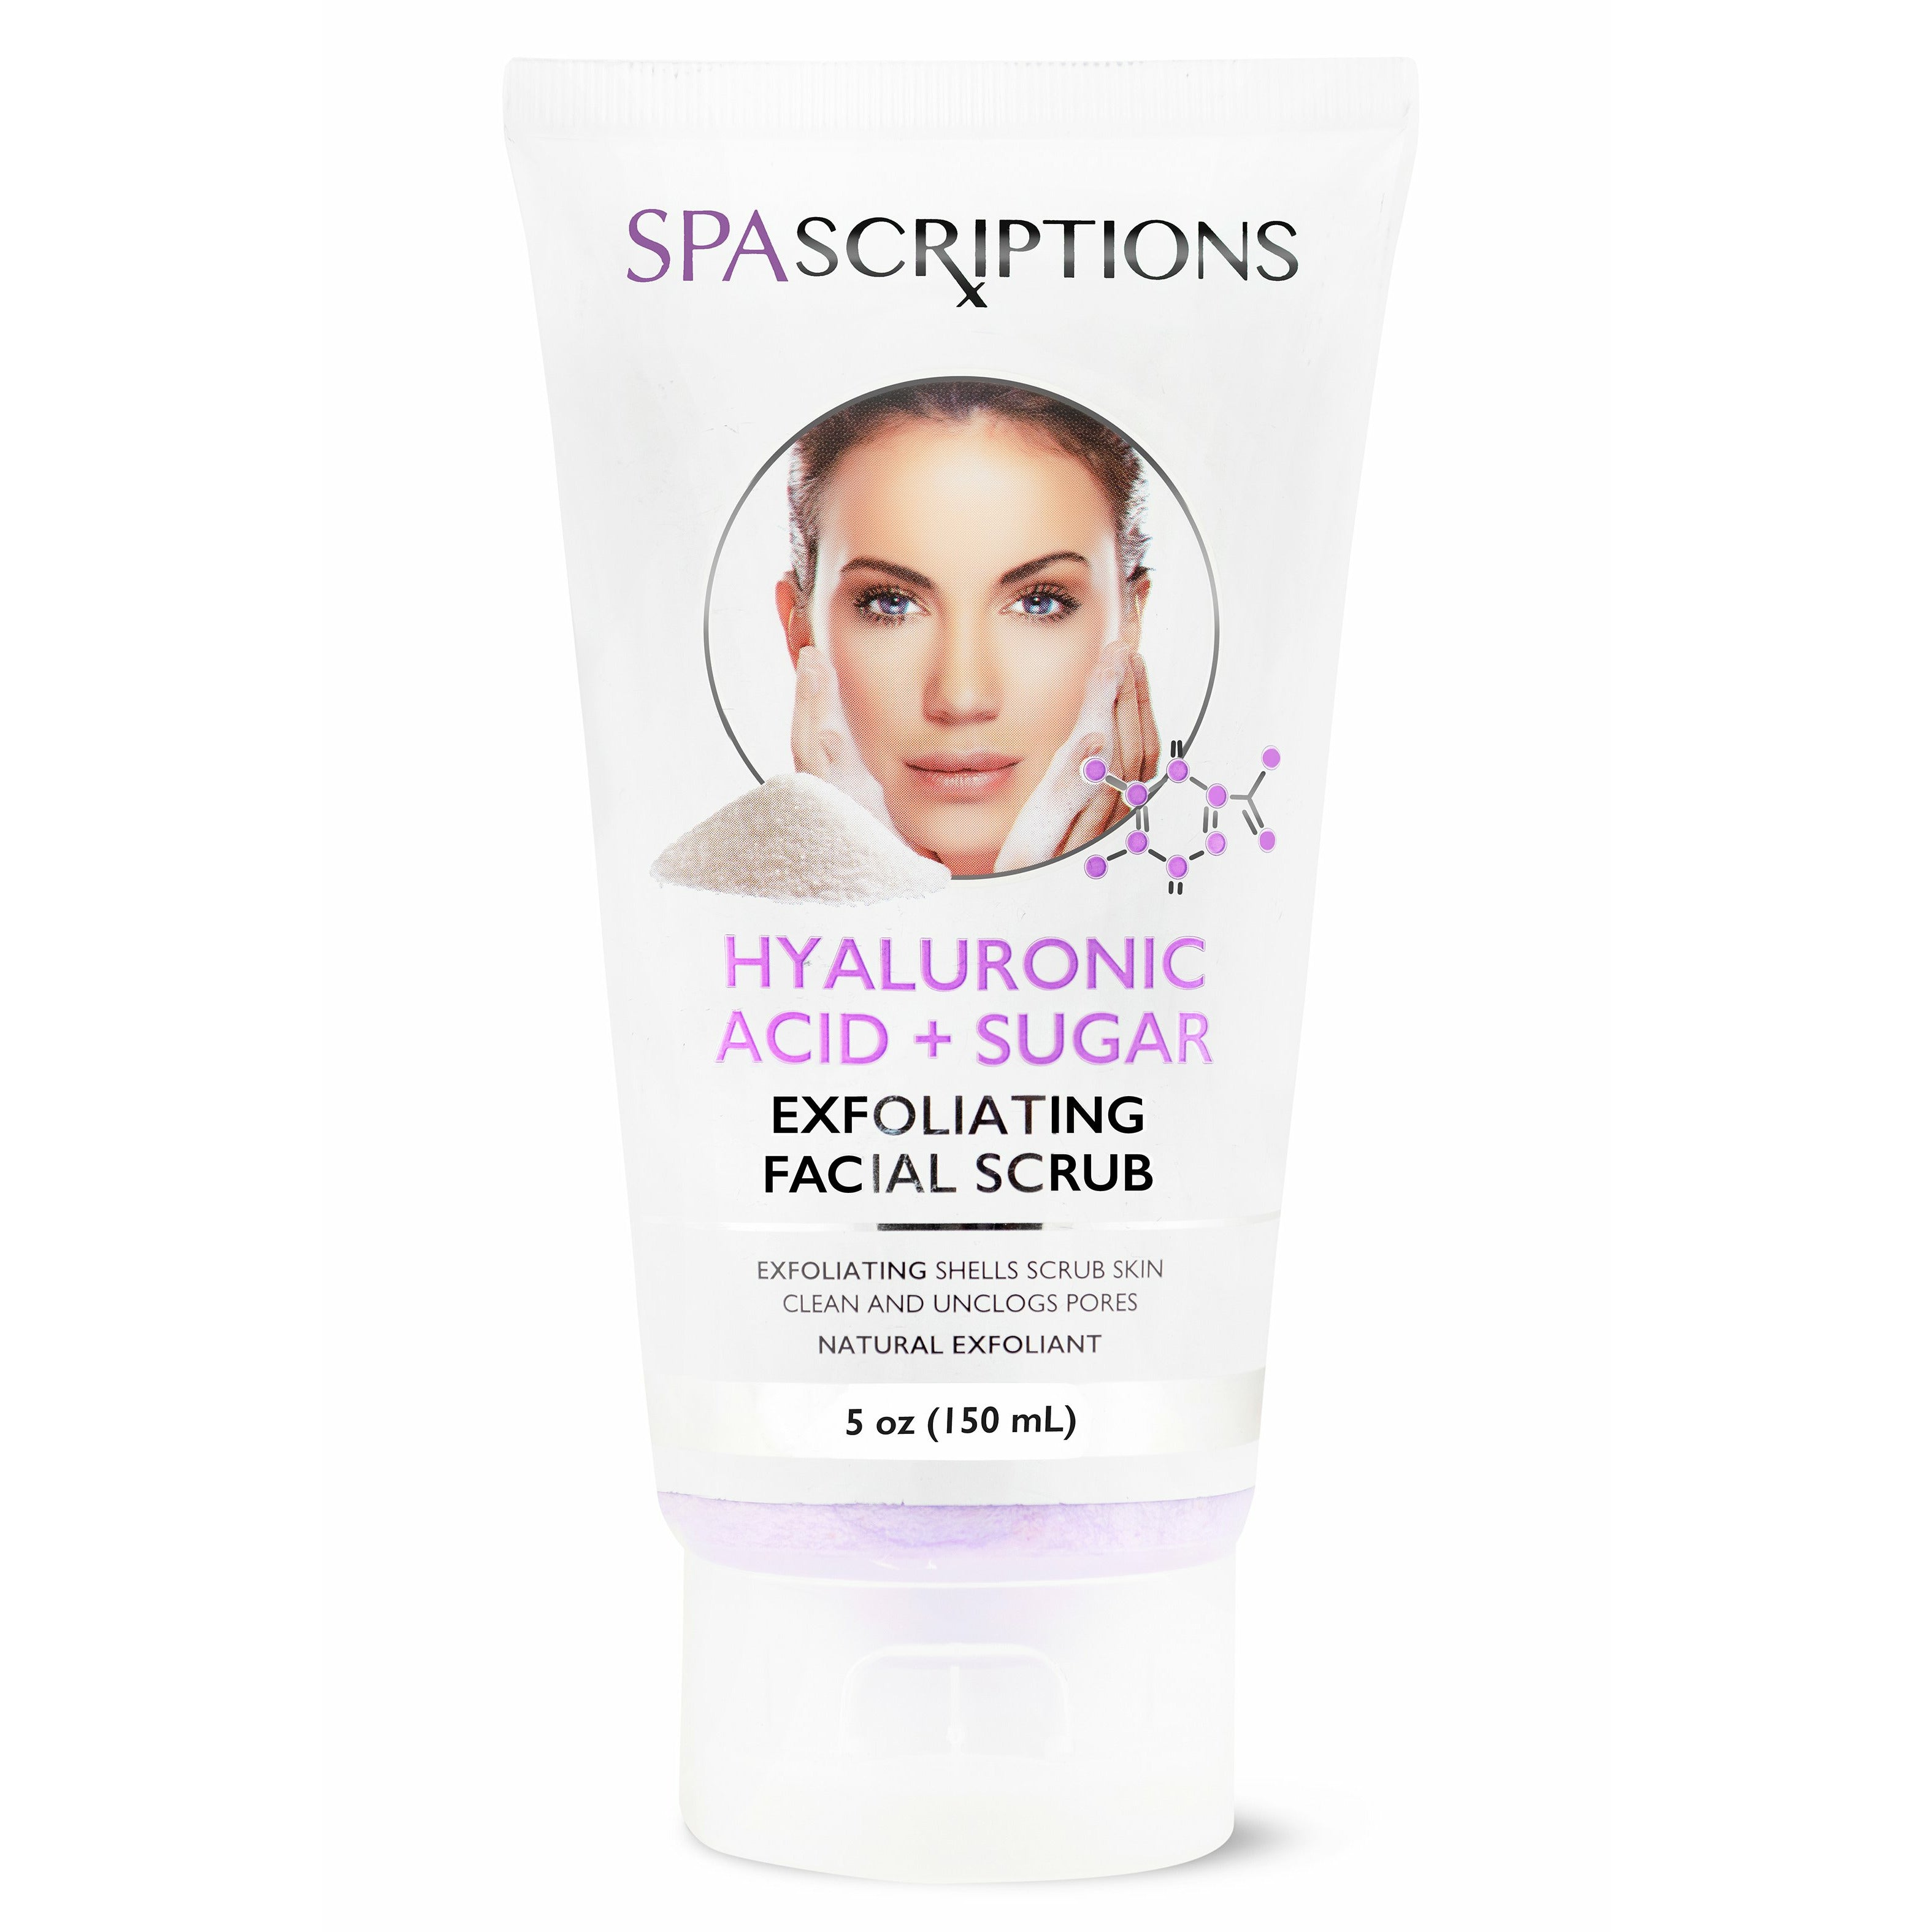 Hyaluronic Acid + Sugar Exfoliating Facial Scrub Spascriptions